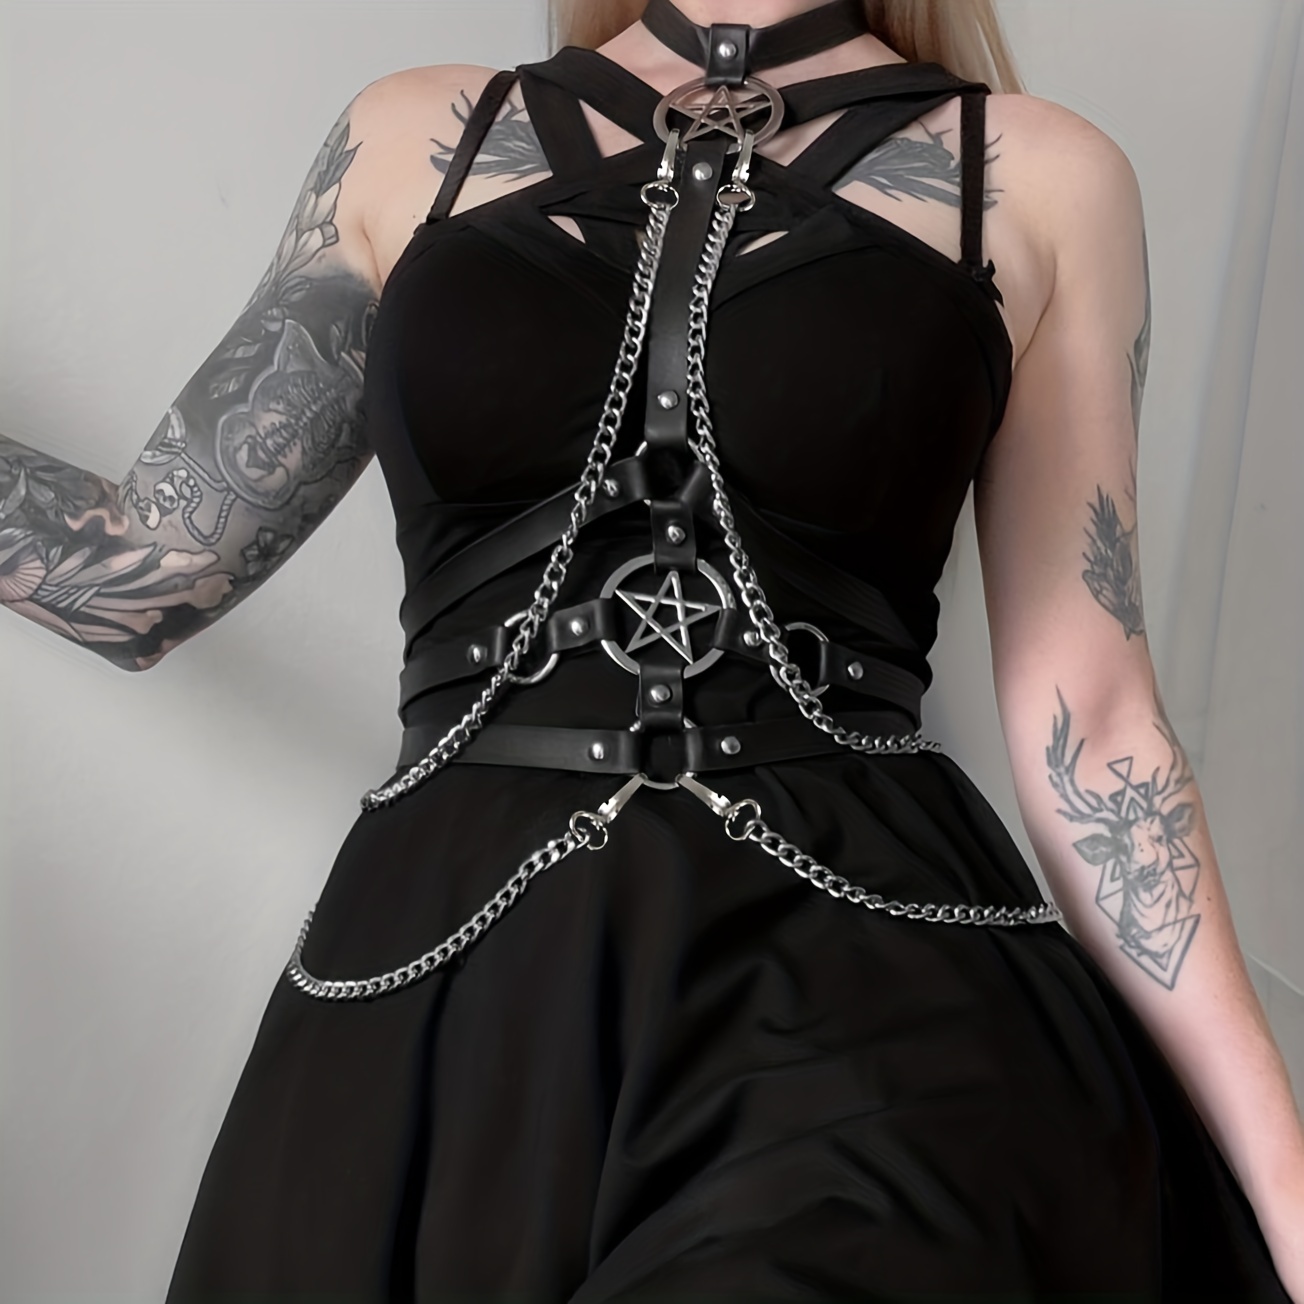 Leather Pentagram Harness Belt Body Chest Bra Waist Suspender Cage